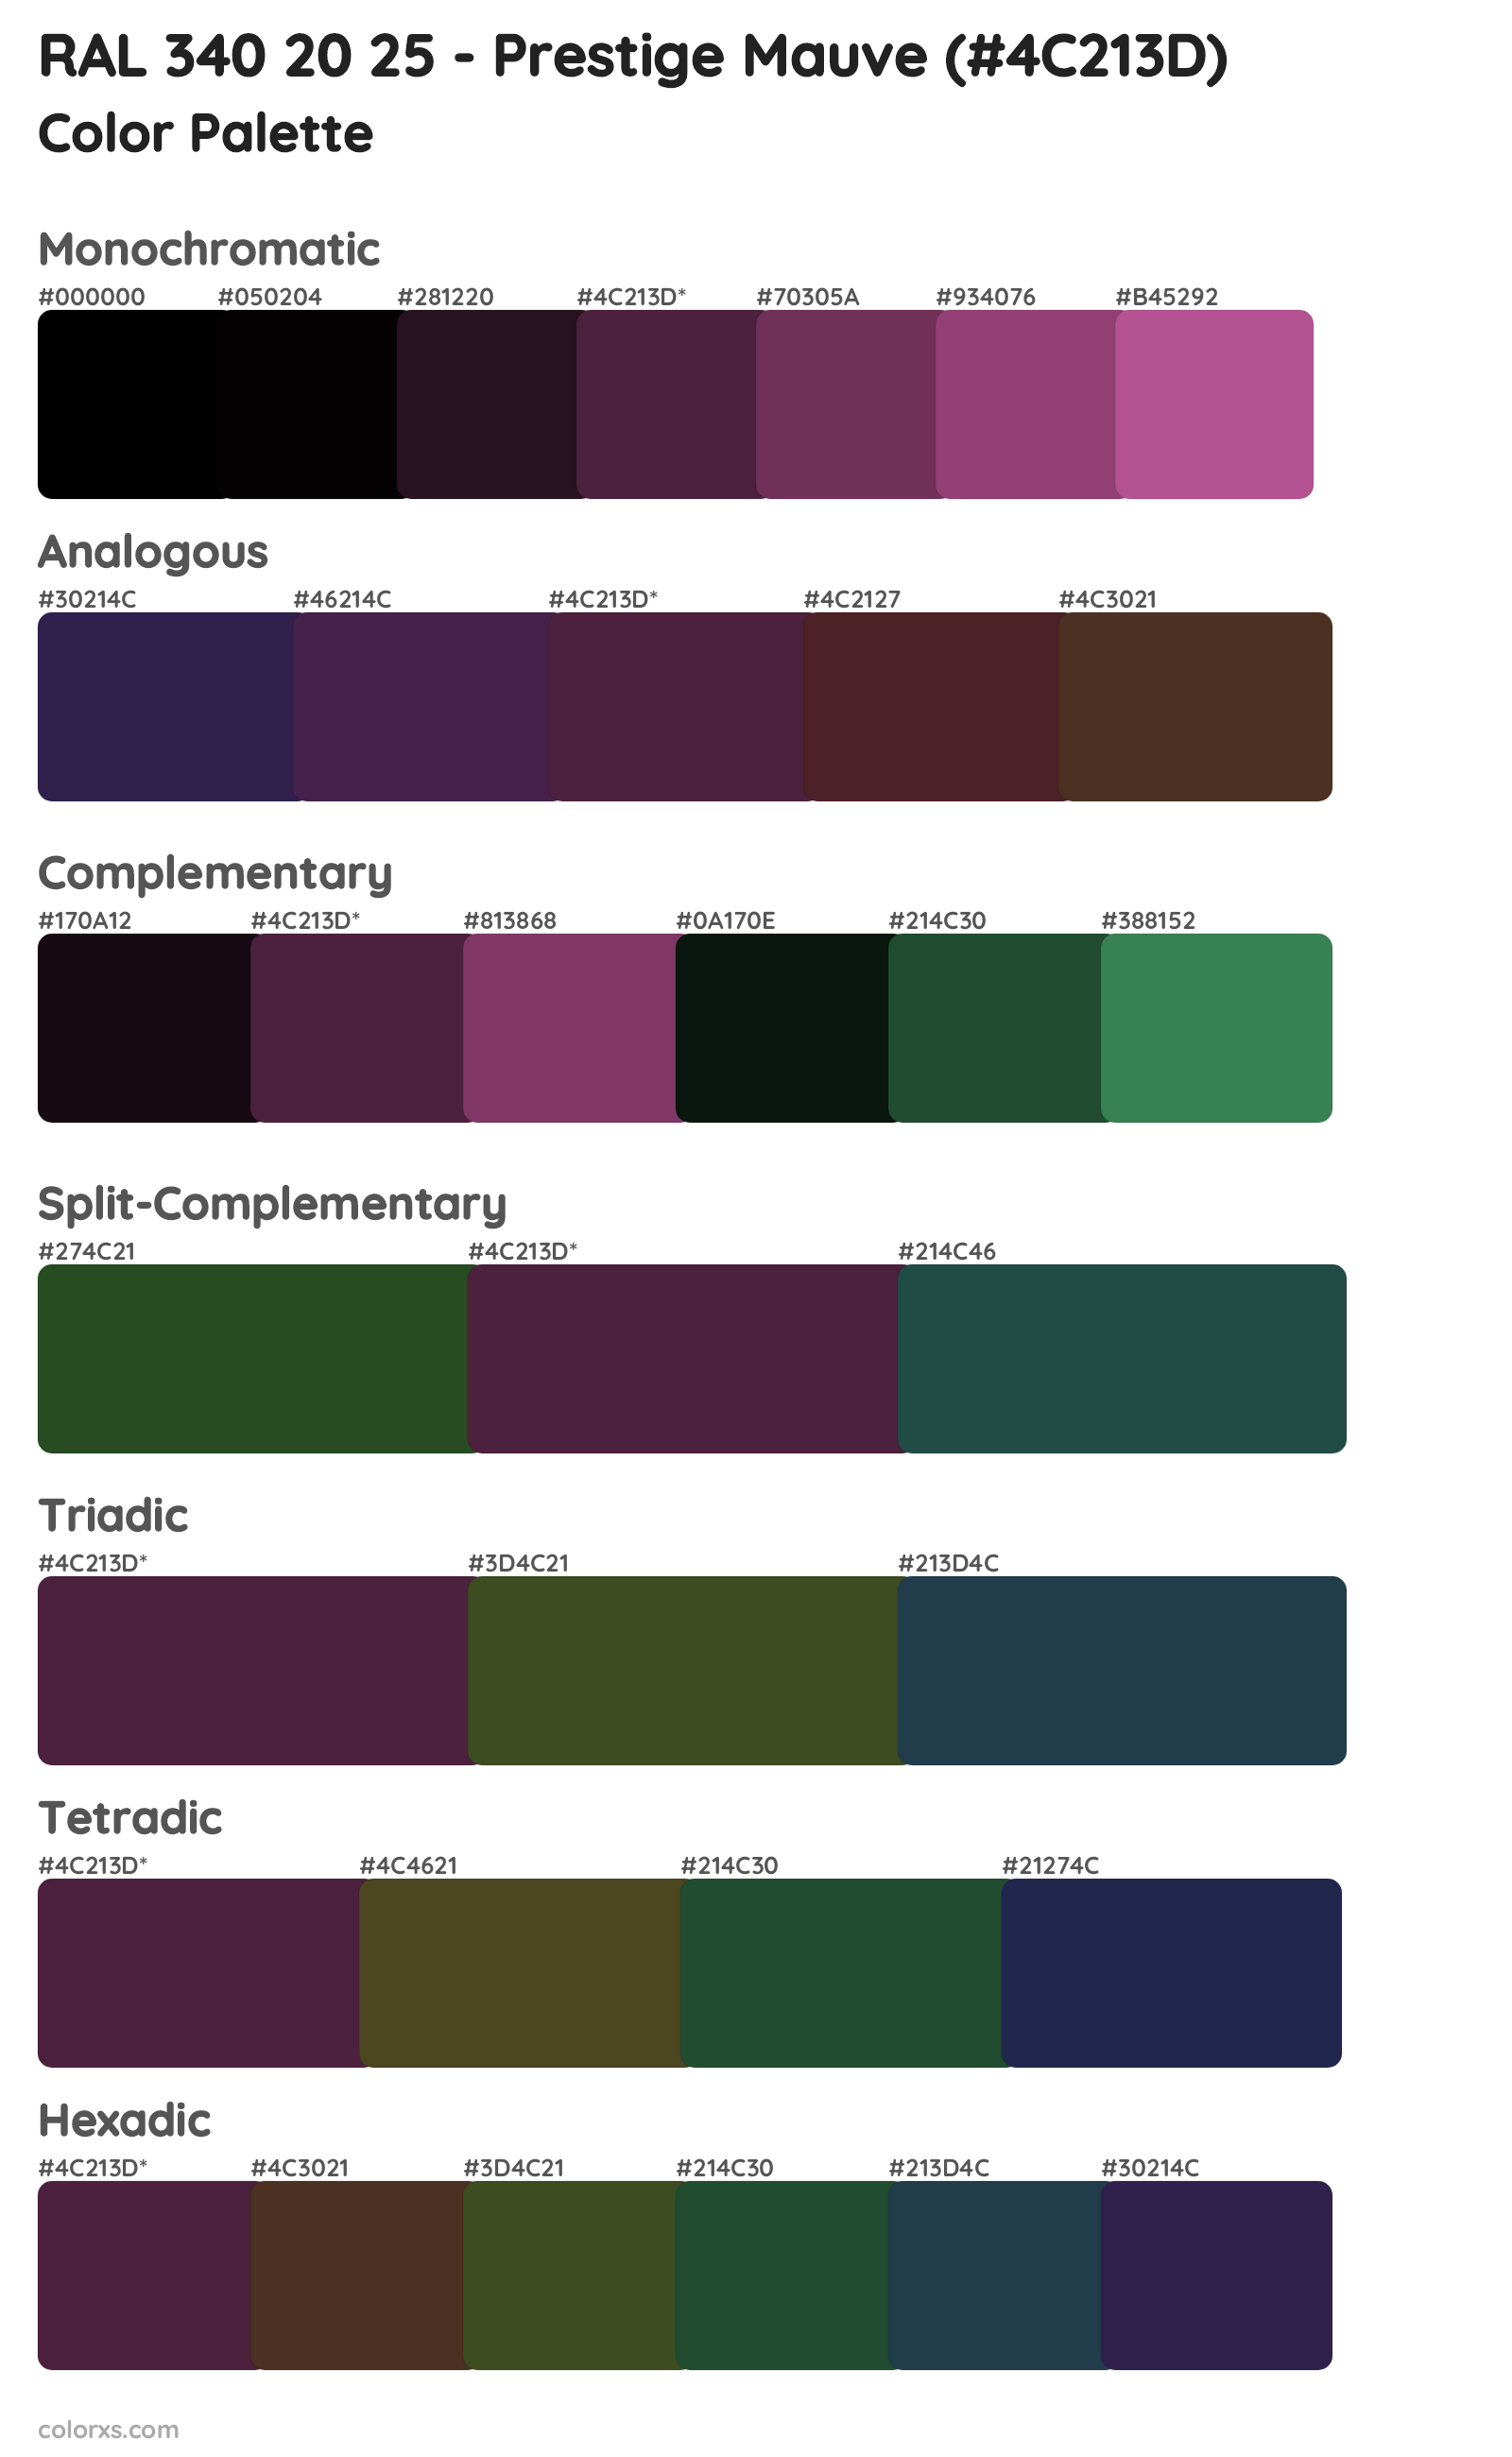 RAL 340 20 25 - Prestige Mauve Color Scheme Palettes